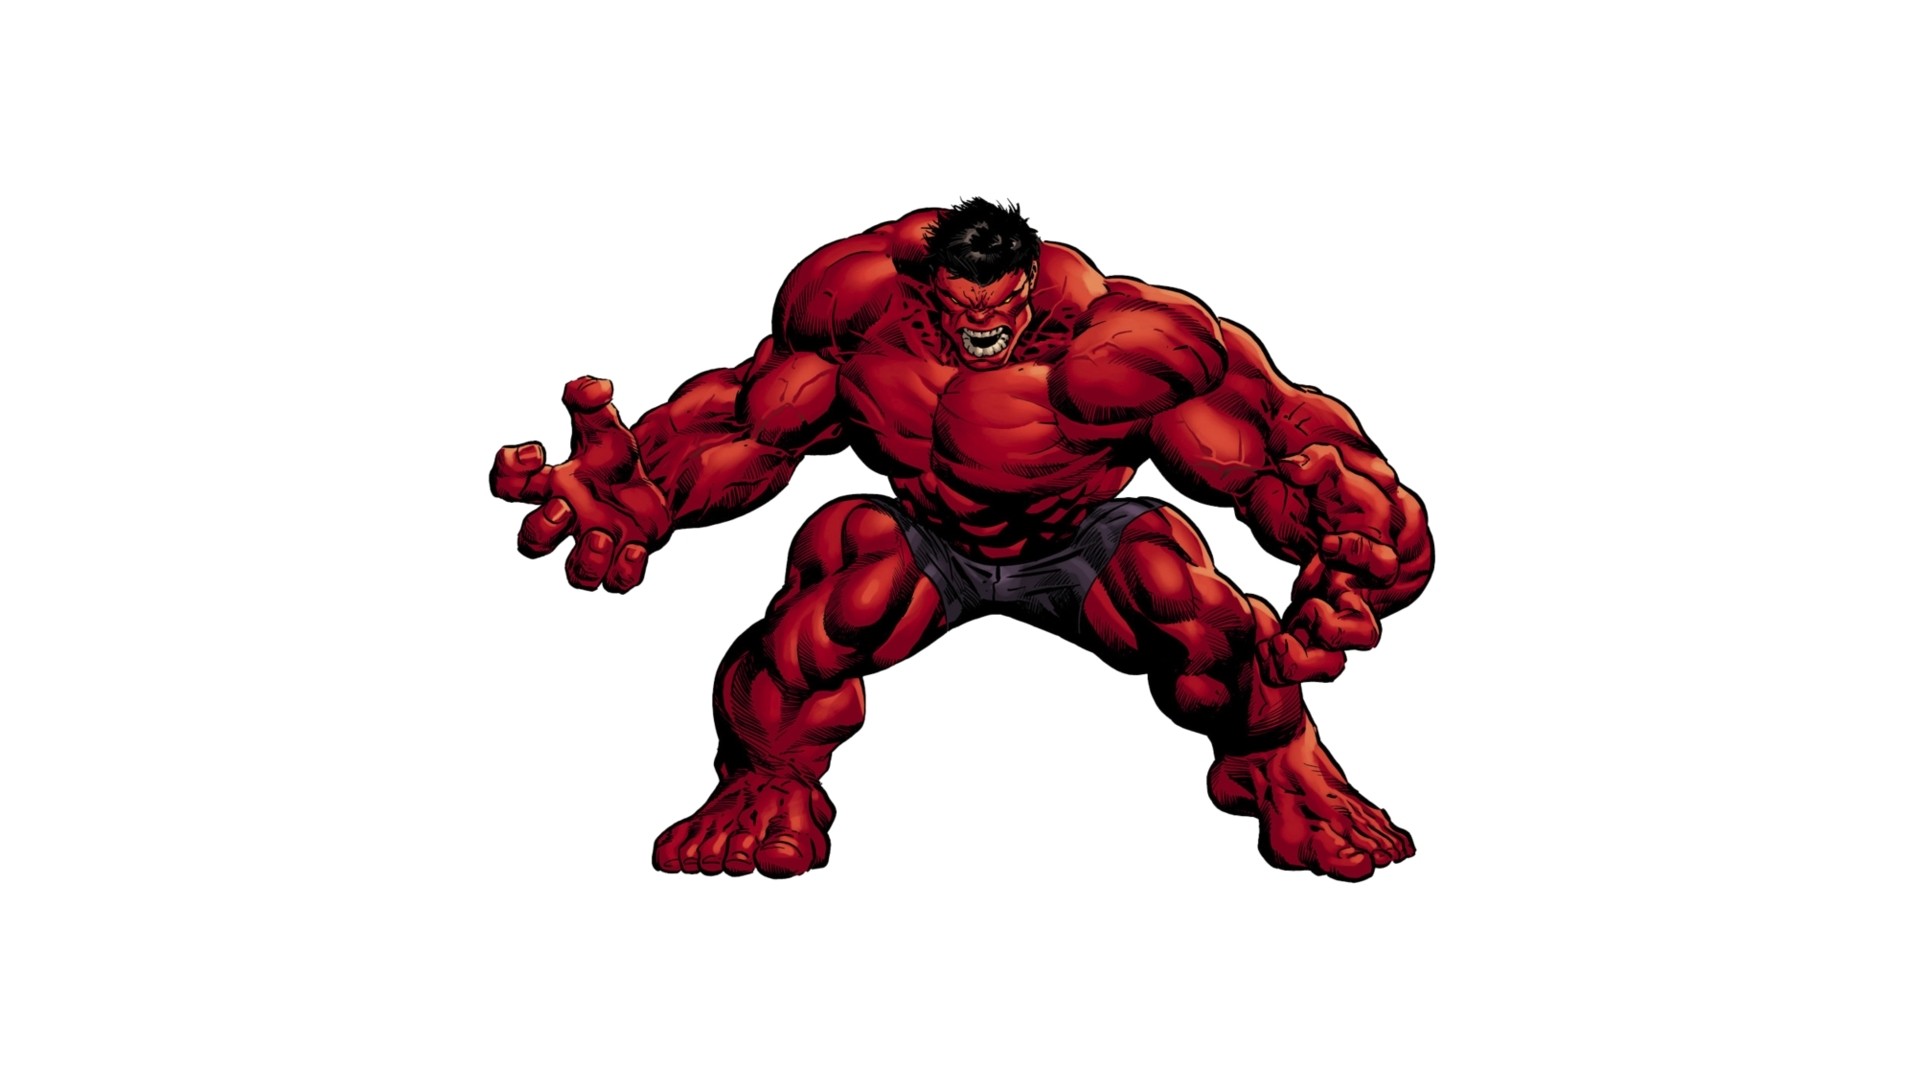 Red Hulk Hulk Artwork 1920x1080